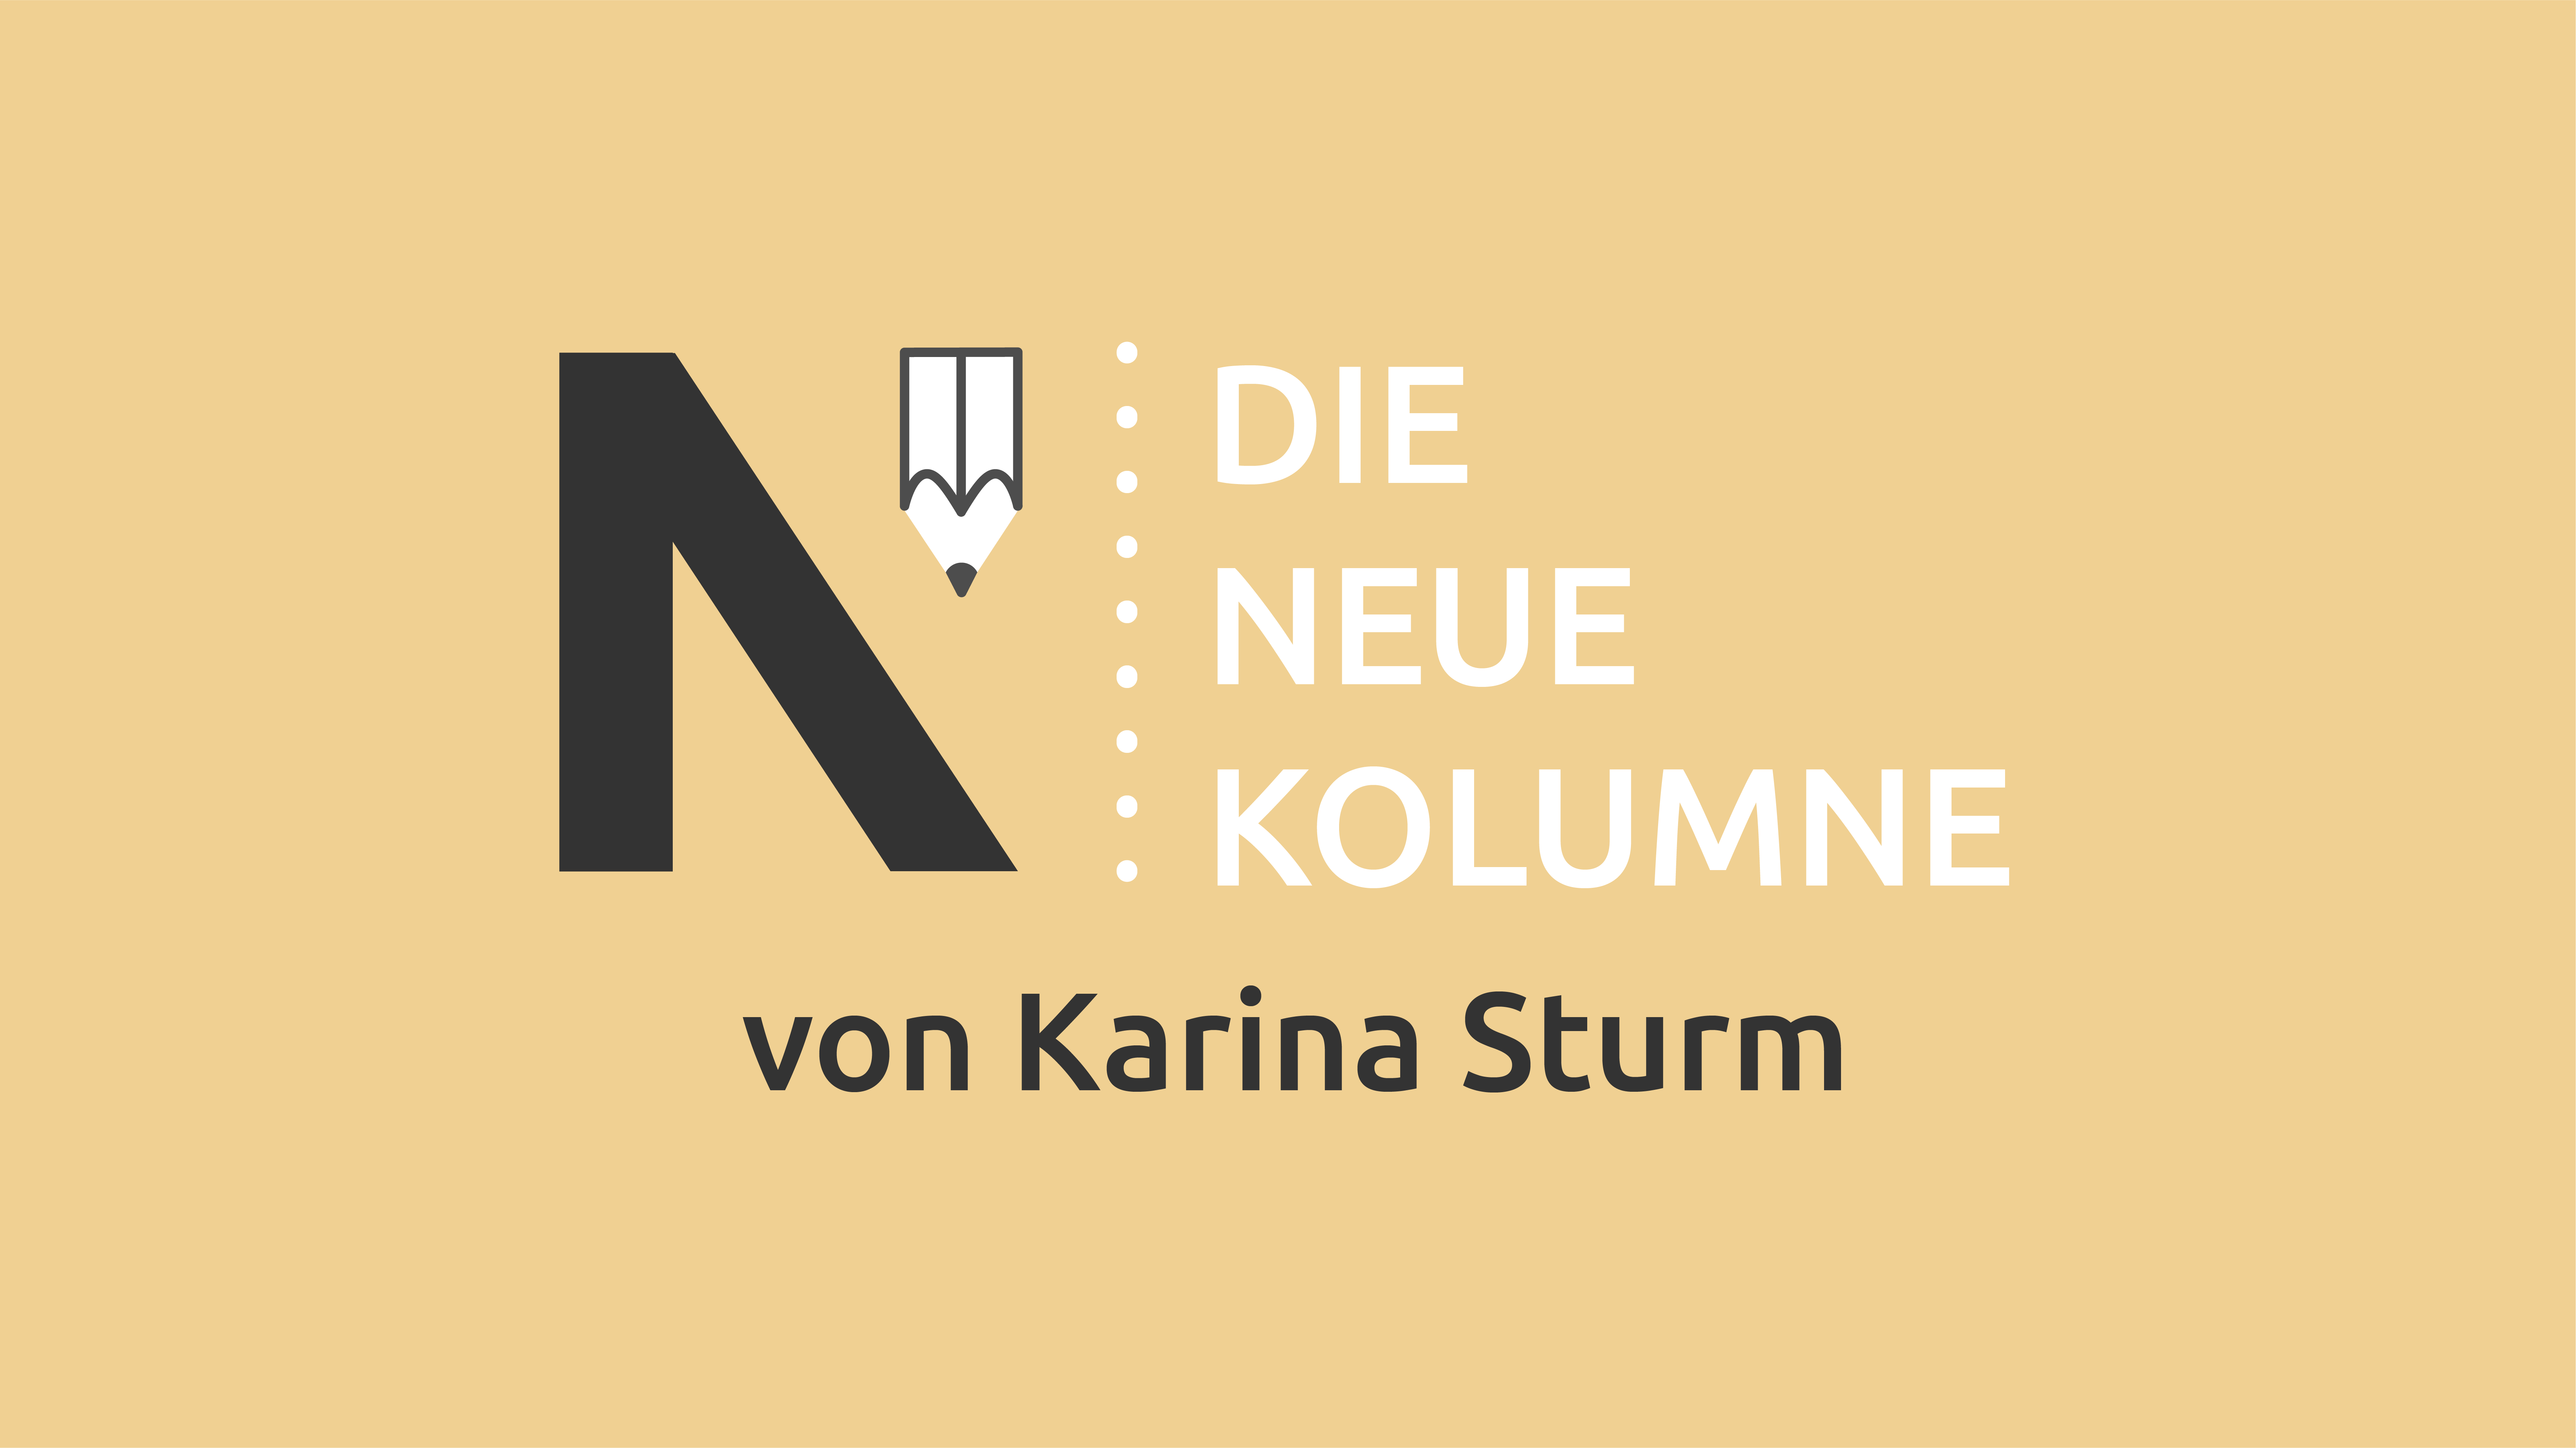 Logo von Die Neue Norm. Rechts steht: Die Neue Kolumne. Unten steht: von Karina Sturm.